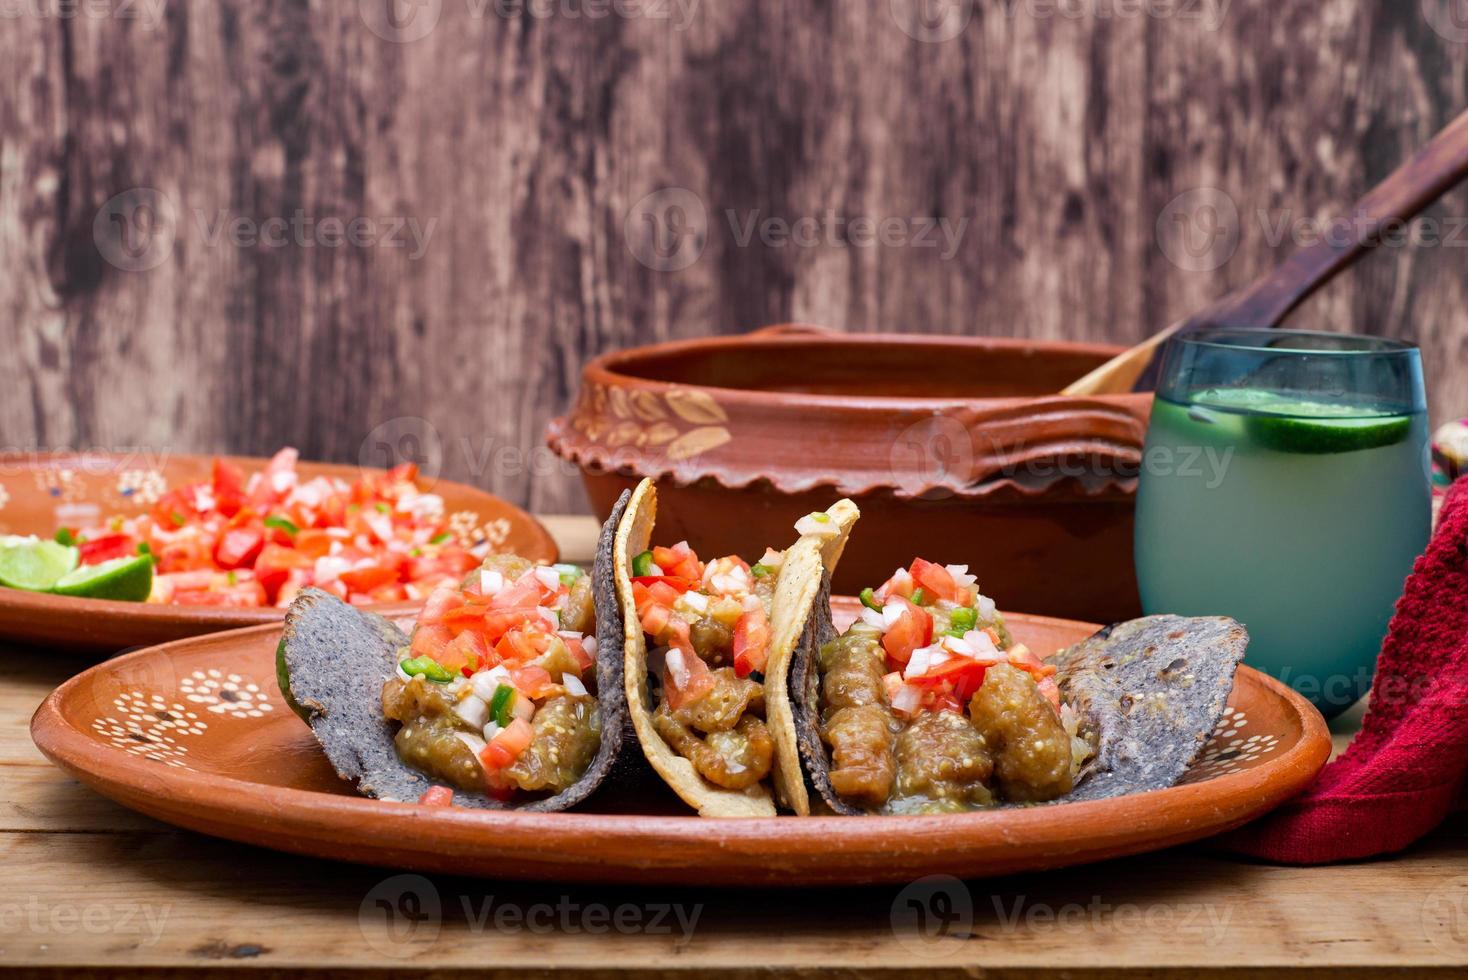 chicharrones em tacos de molho verde. comida típica mexicana. foto